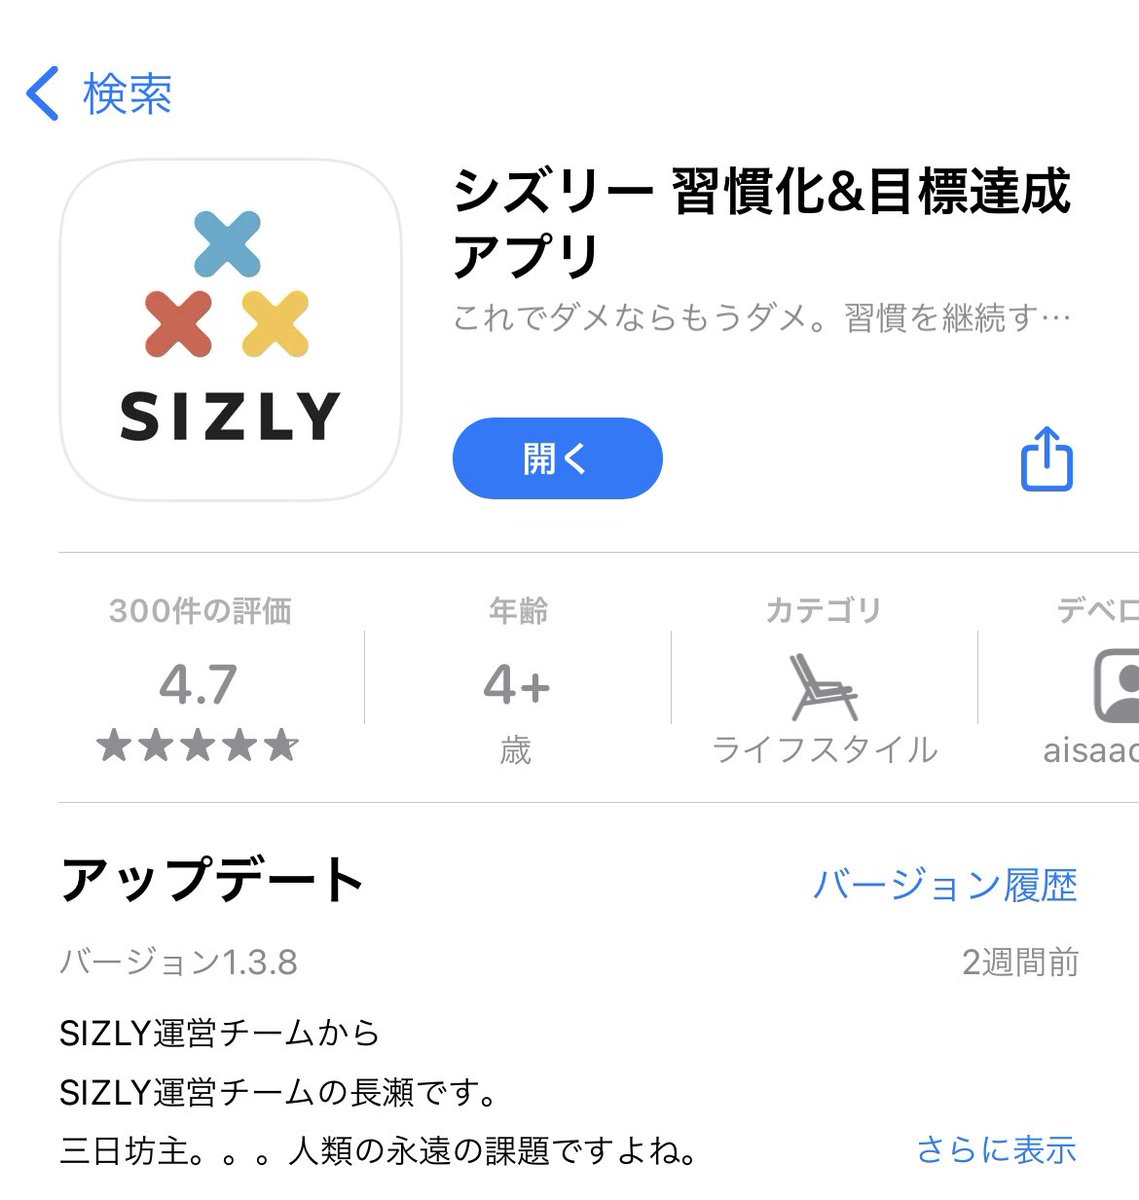 シズリー Sizly Sizly 続けたい人のための 習慣化アプリ Sizly Jp Twitter